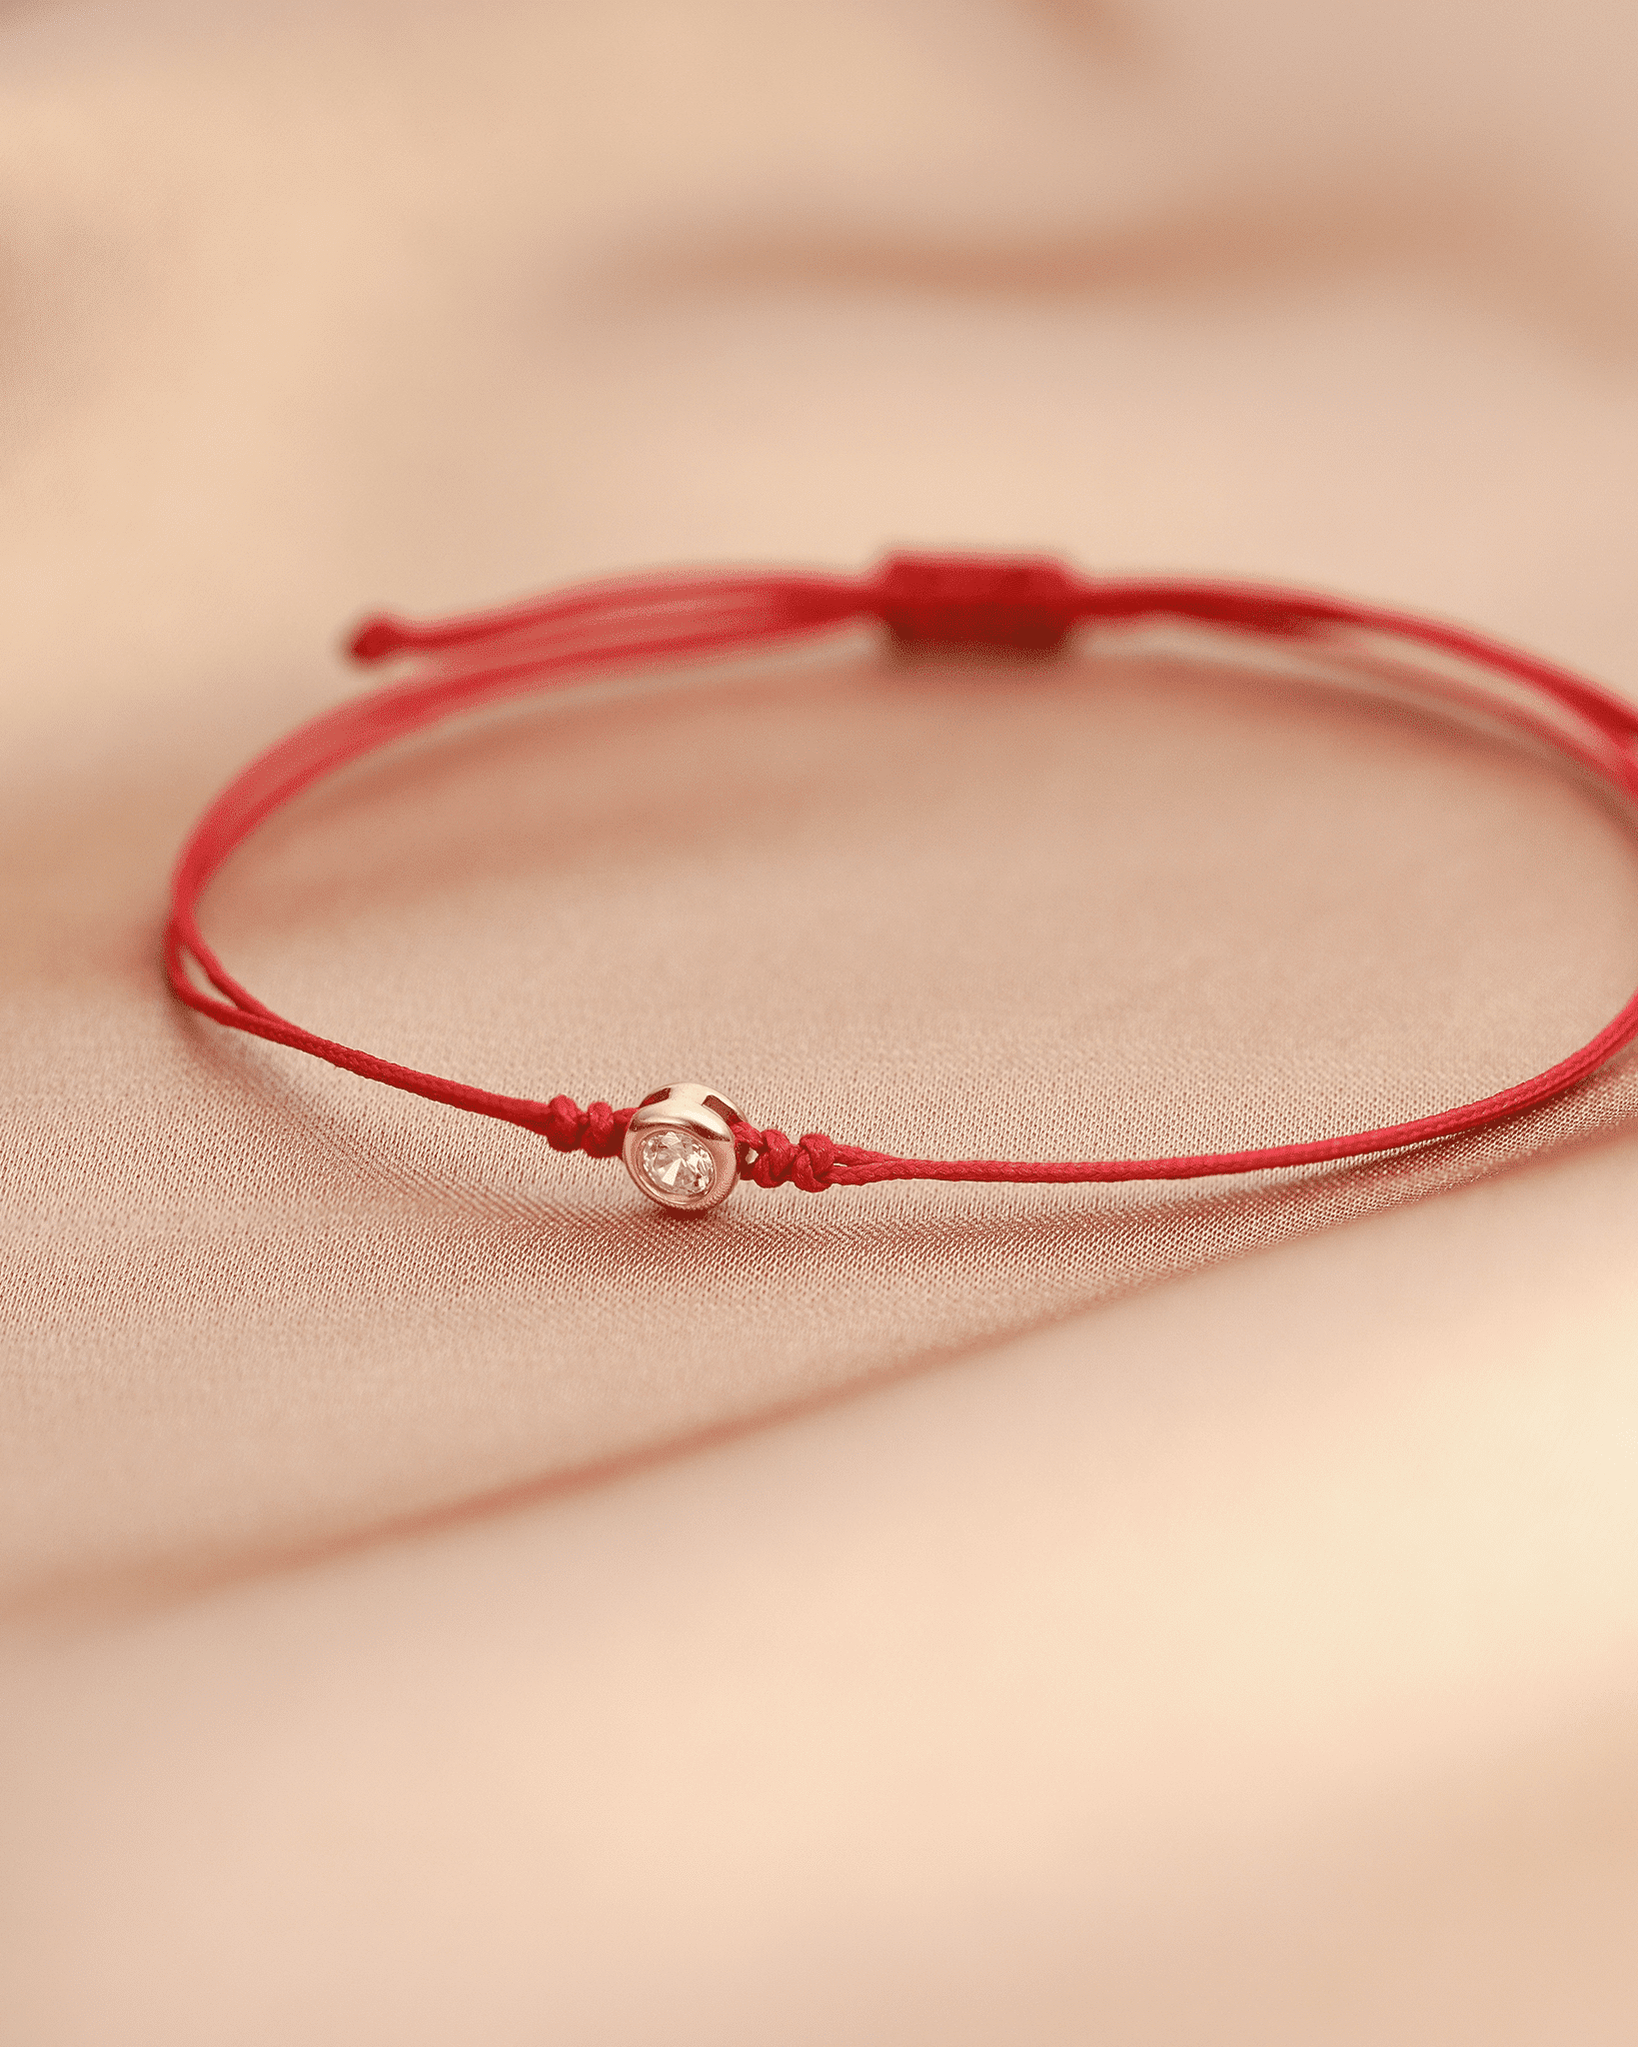 Le String of Love - Or Jaune 14 carats Bracelets magal-dev 